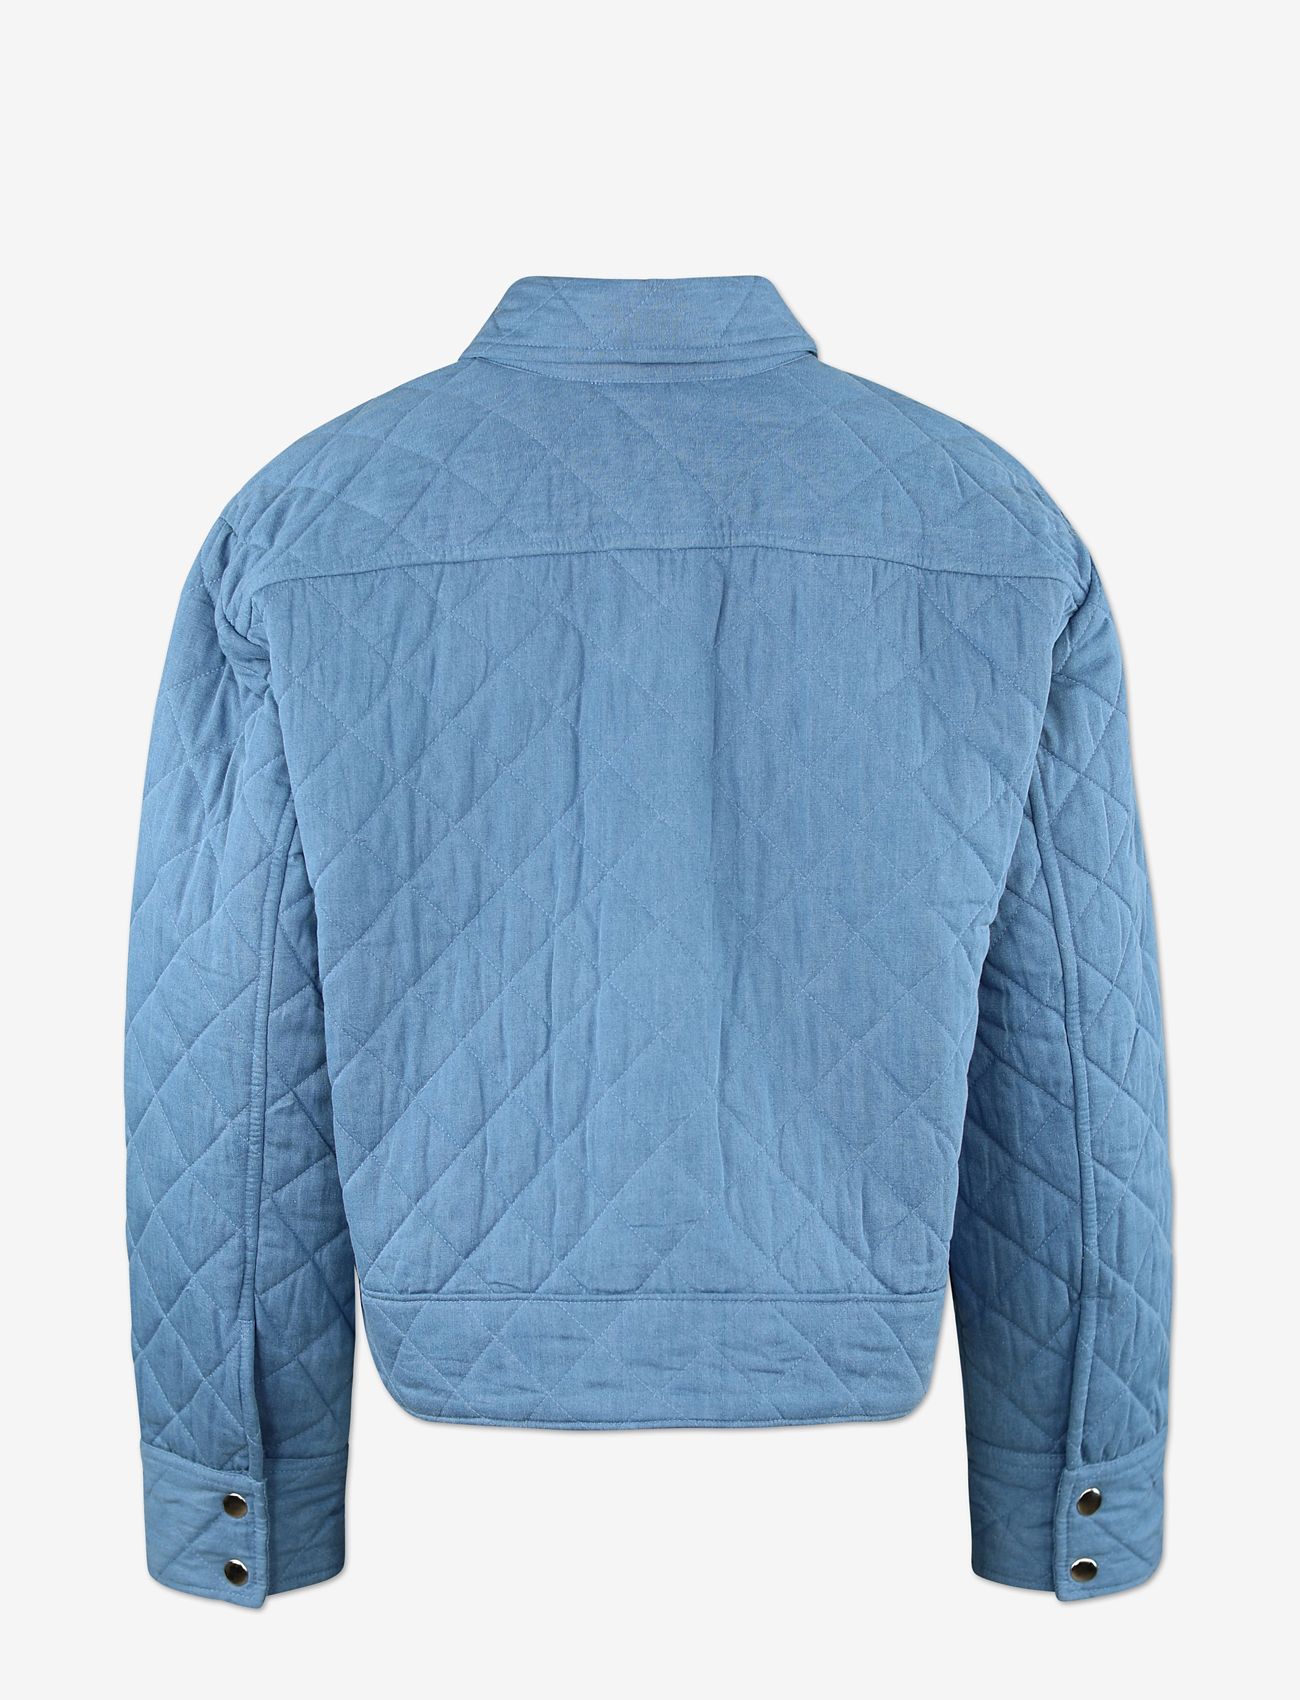 Six Ames - FRIDA - spring jackets - denim blue - 1